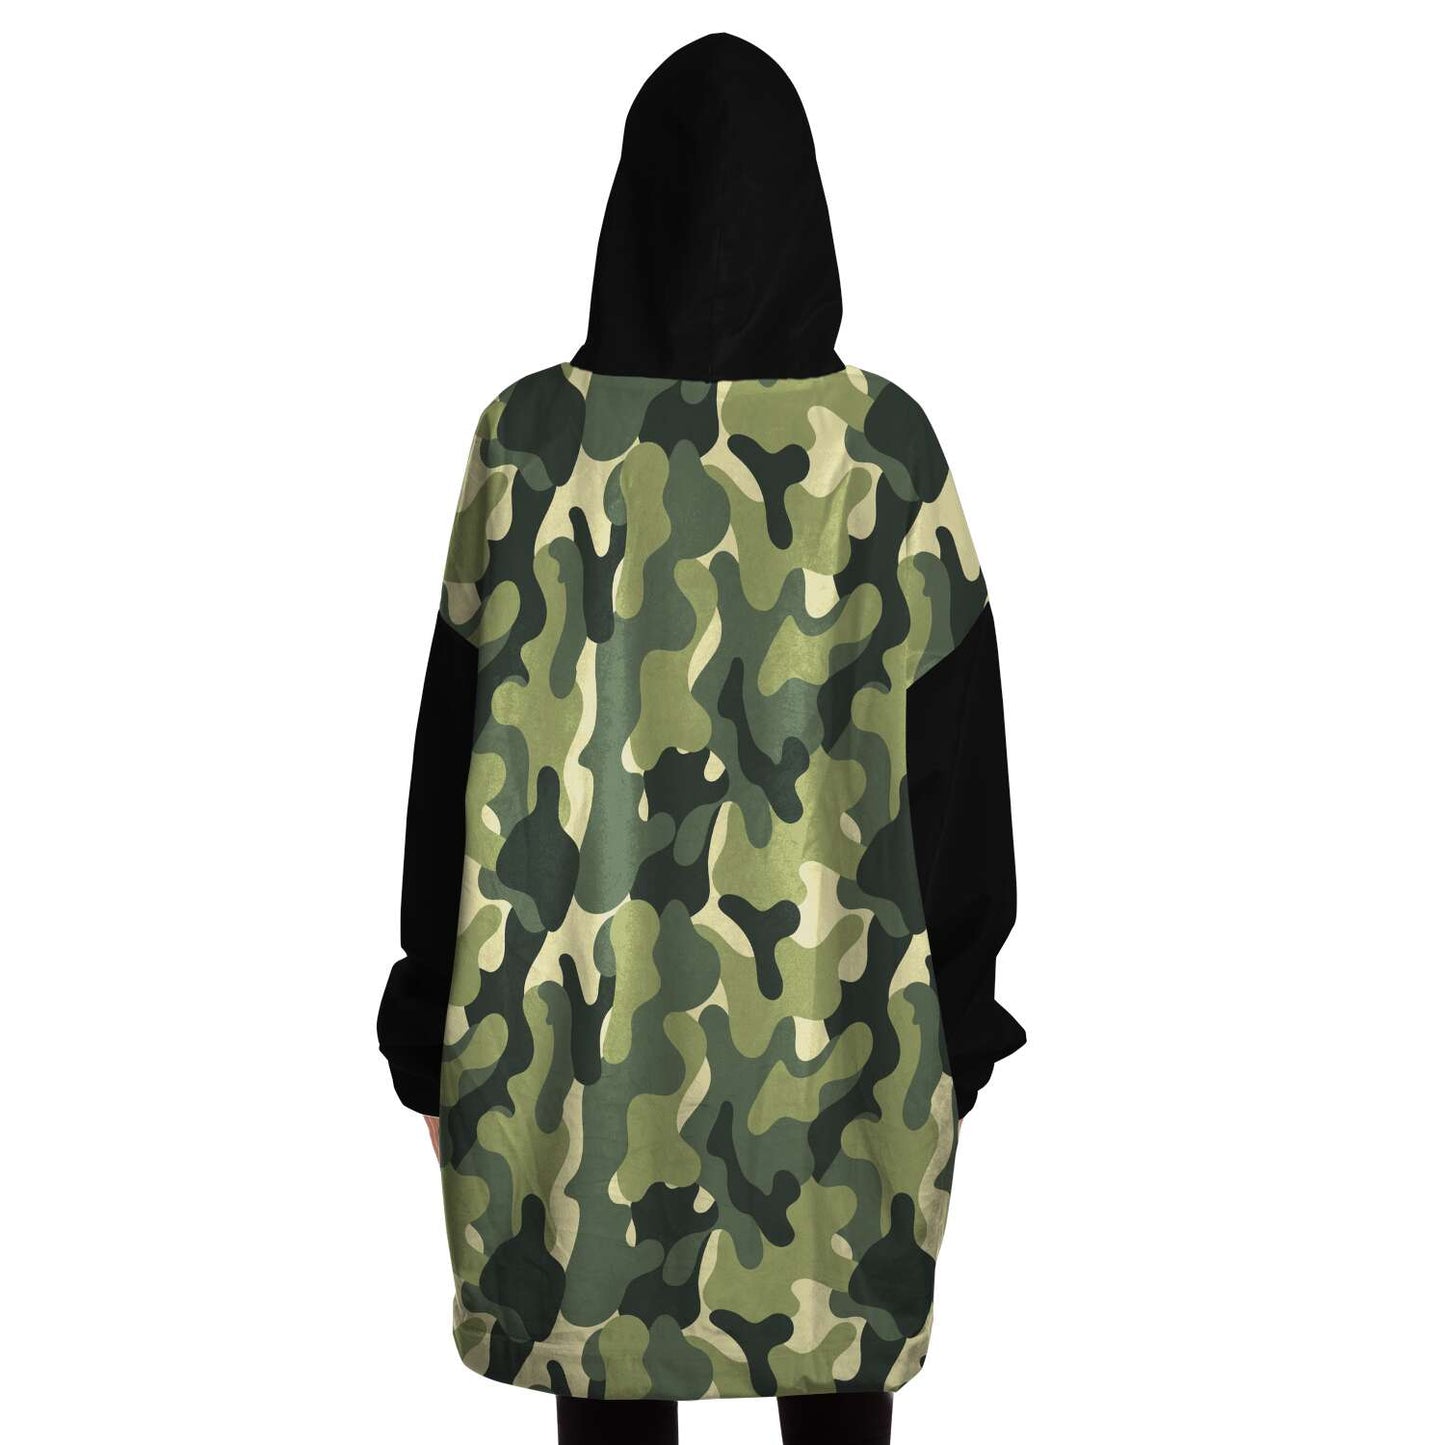 Snug Hoodie - Camouflage